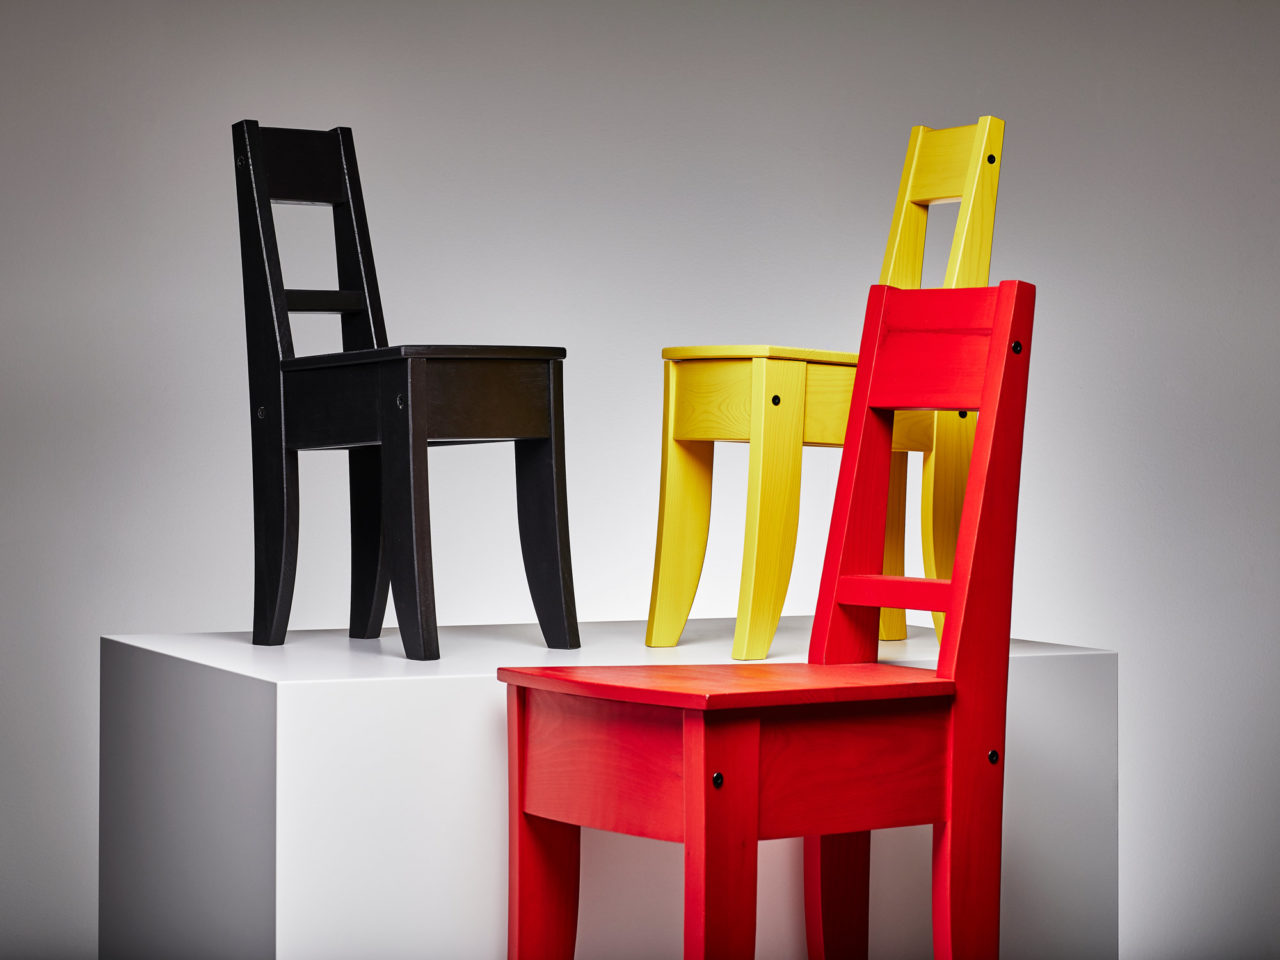 Drei einfache Holzstühle, ein schwarzer, ein gelber, ein roter, angeordnet auf und neben einem weißen Würfel.